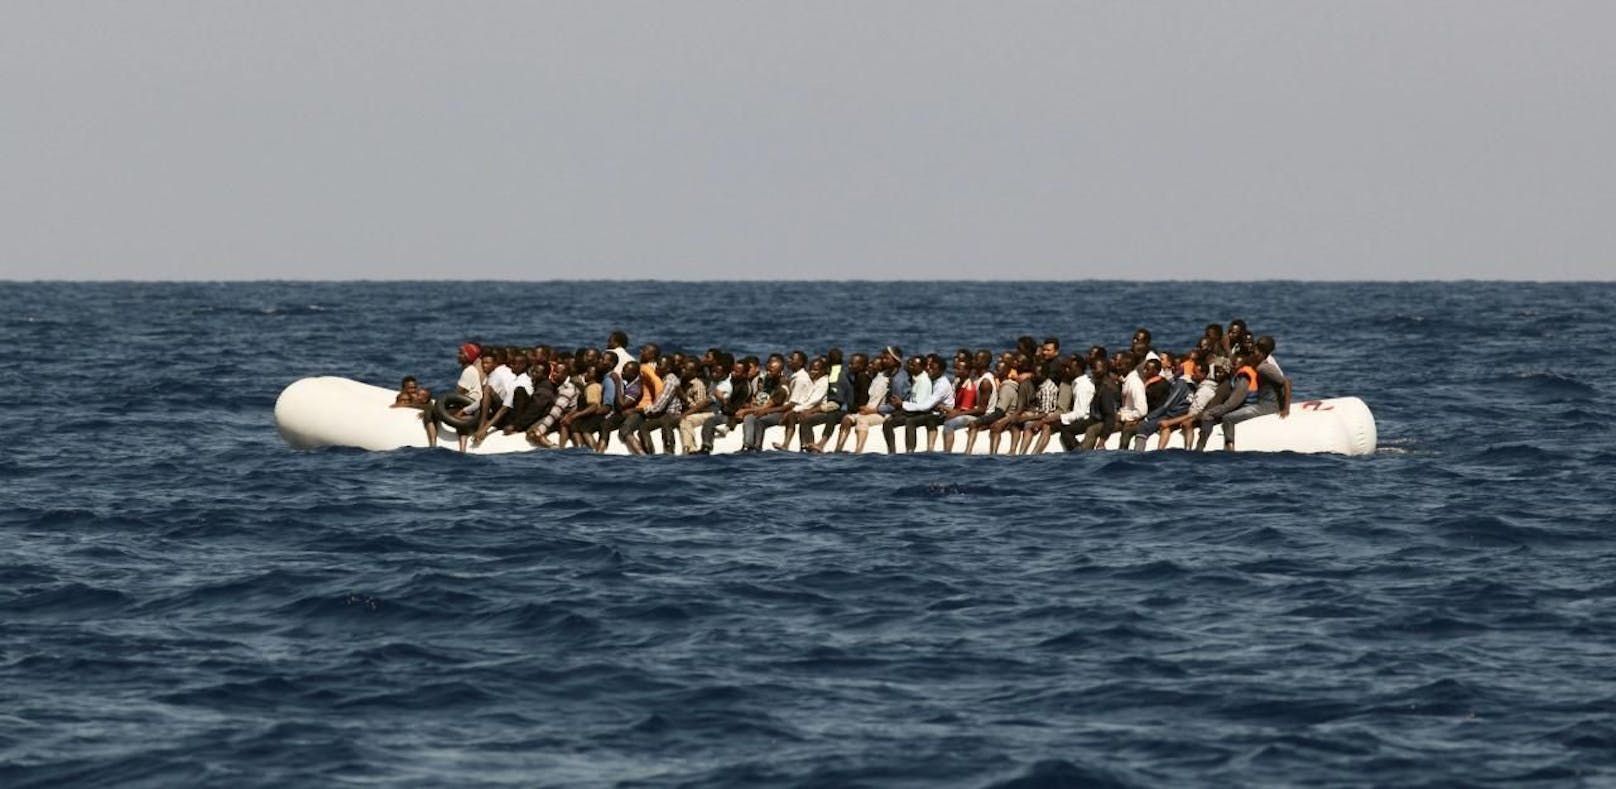 Flüchtlingsboot gekentert: Mehr als 100 Vermisste